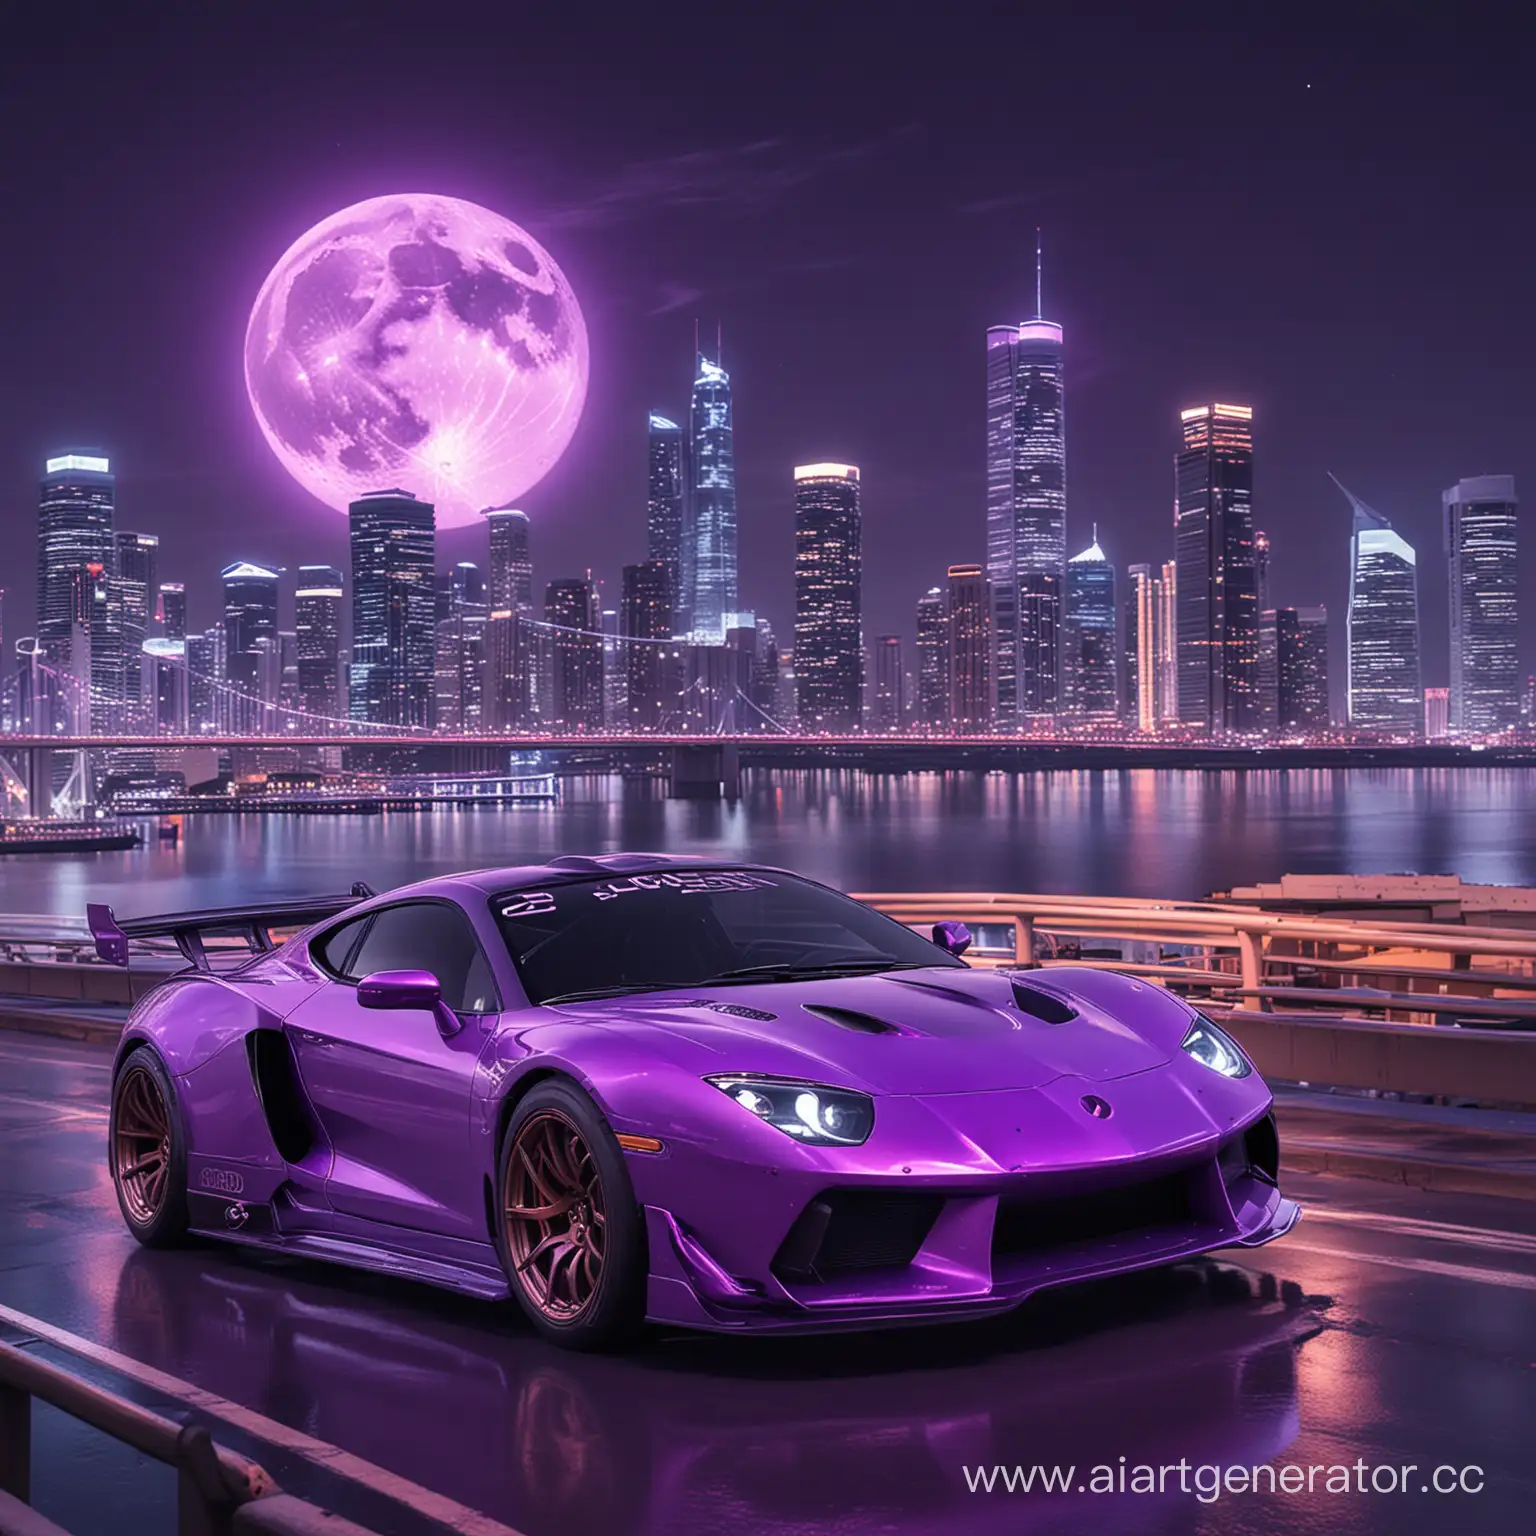 Фиолетовая неоновая гоночная машина дрифтит на мосту на фоне неонового города и луны